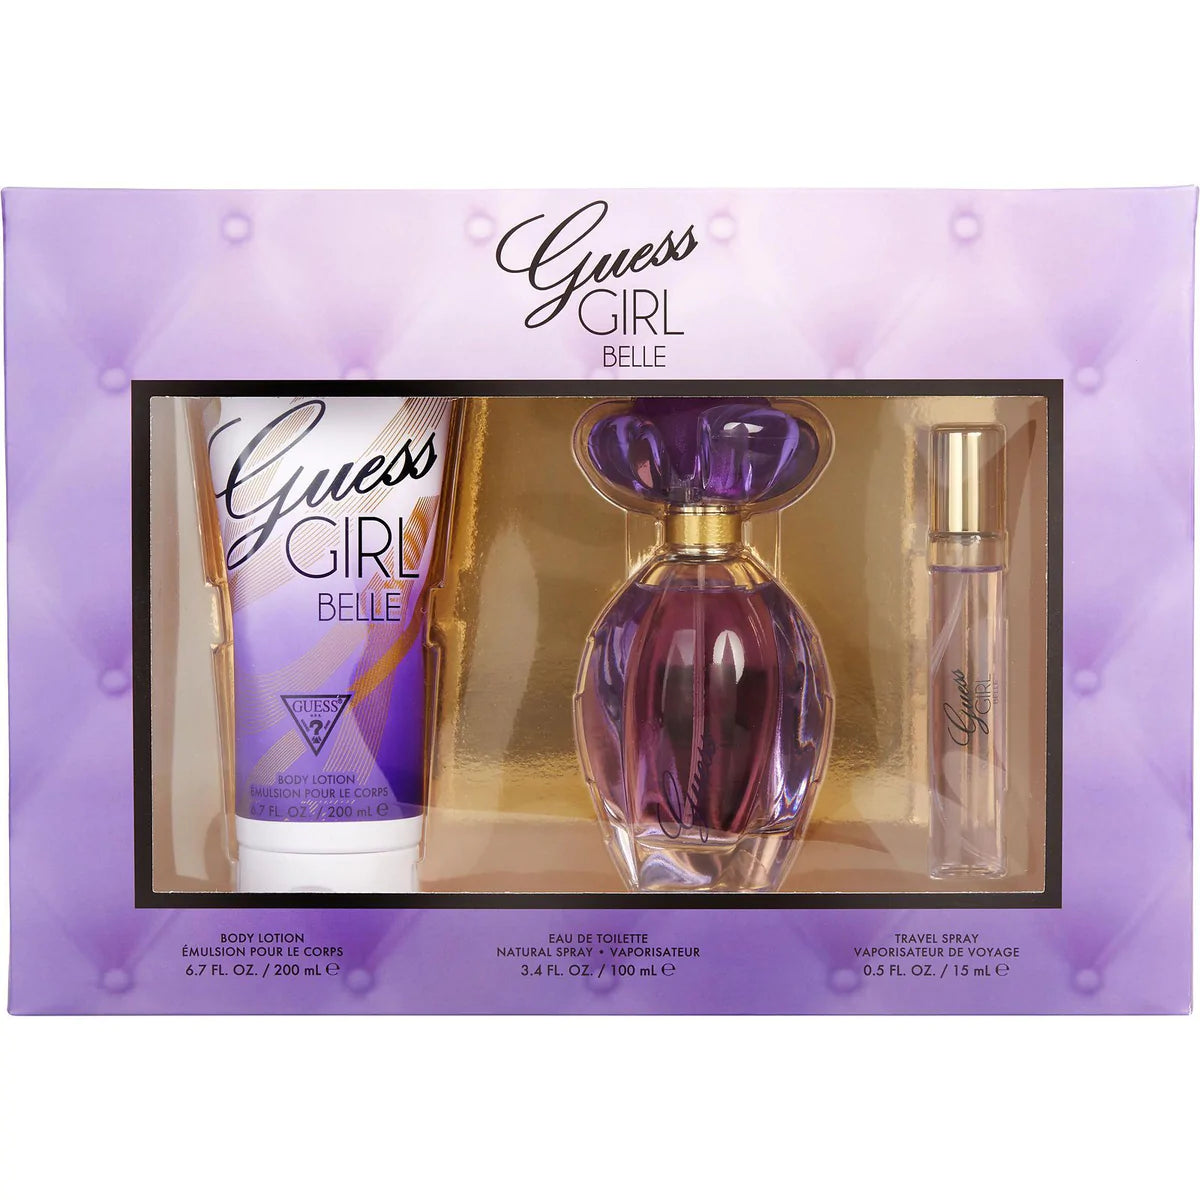 Guess Girl Belle Eau de Toilette Gift Set (3PC) - Perfume Planet 